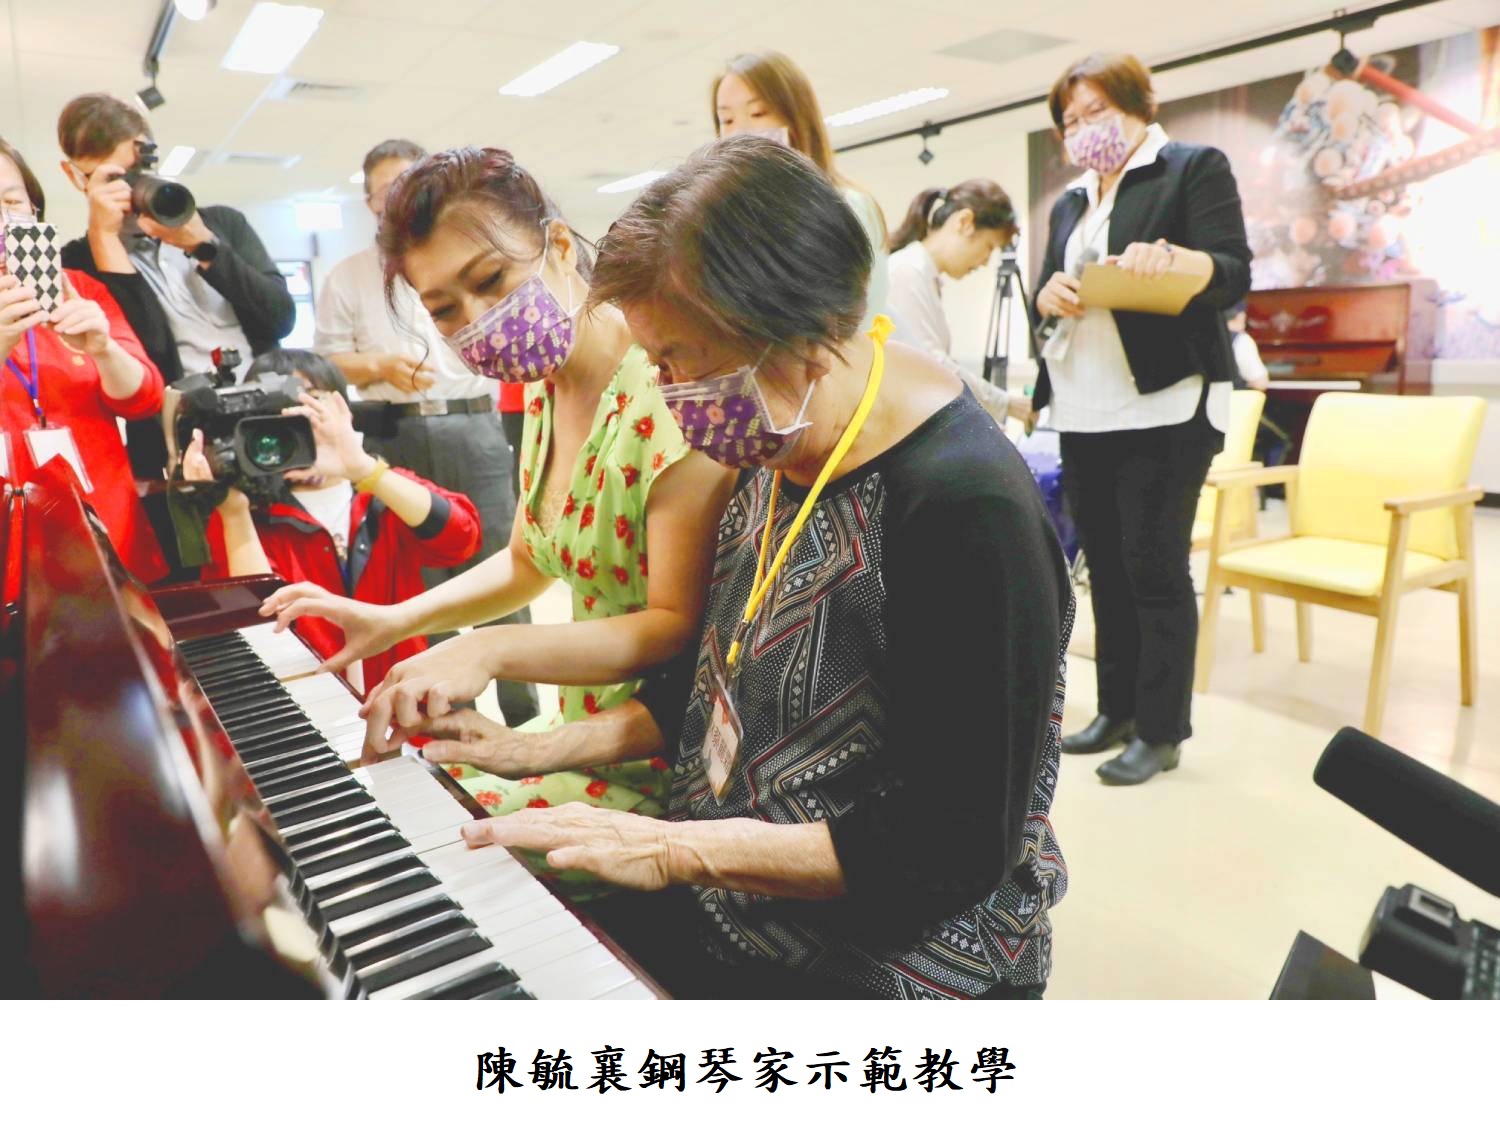 陳毓襄鋼琴家示範教學